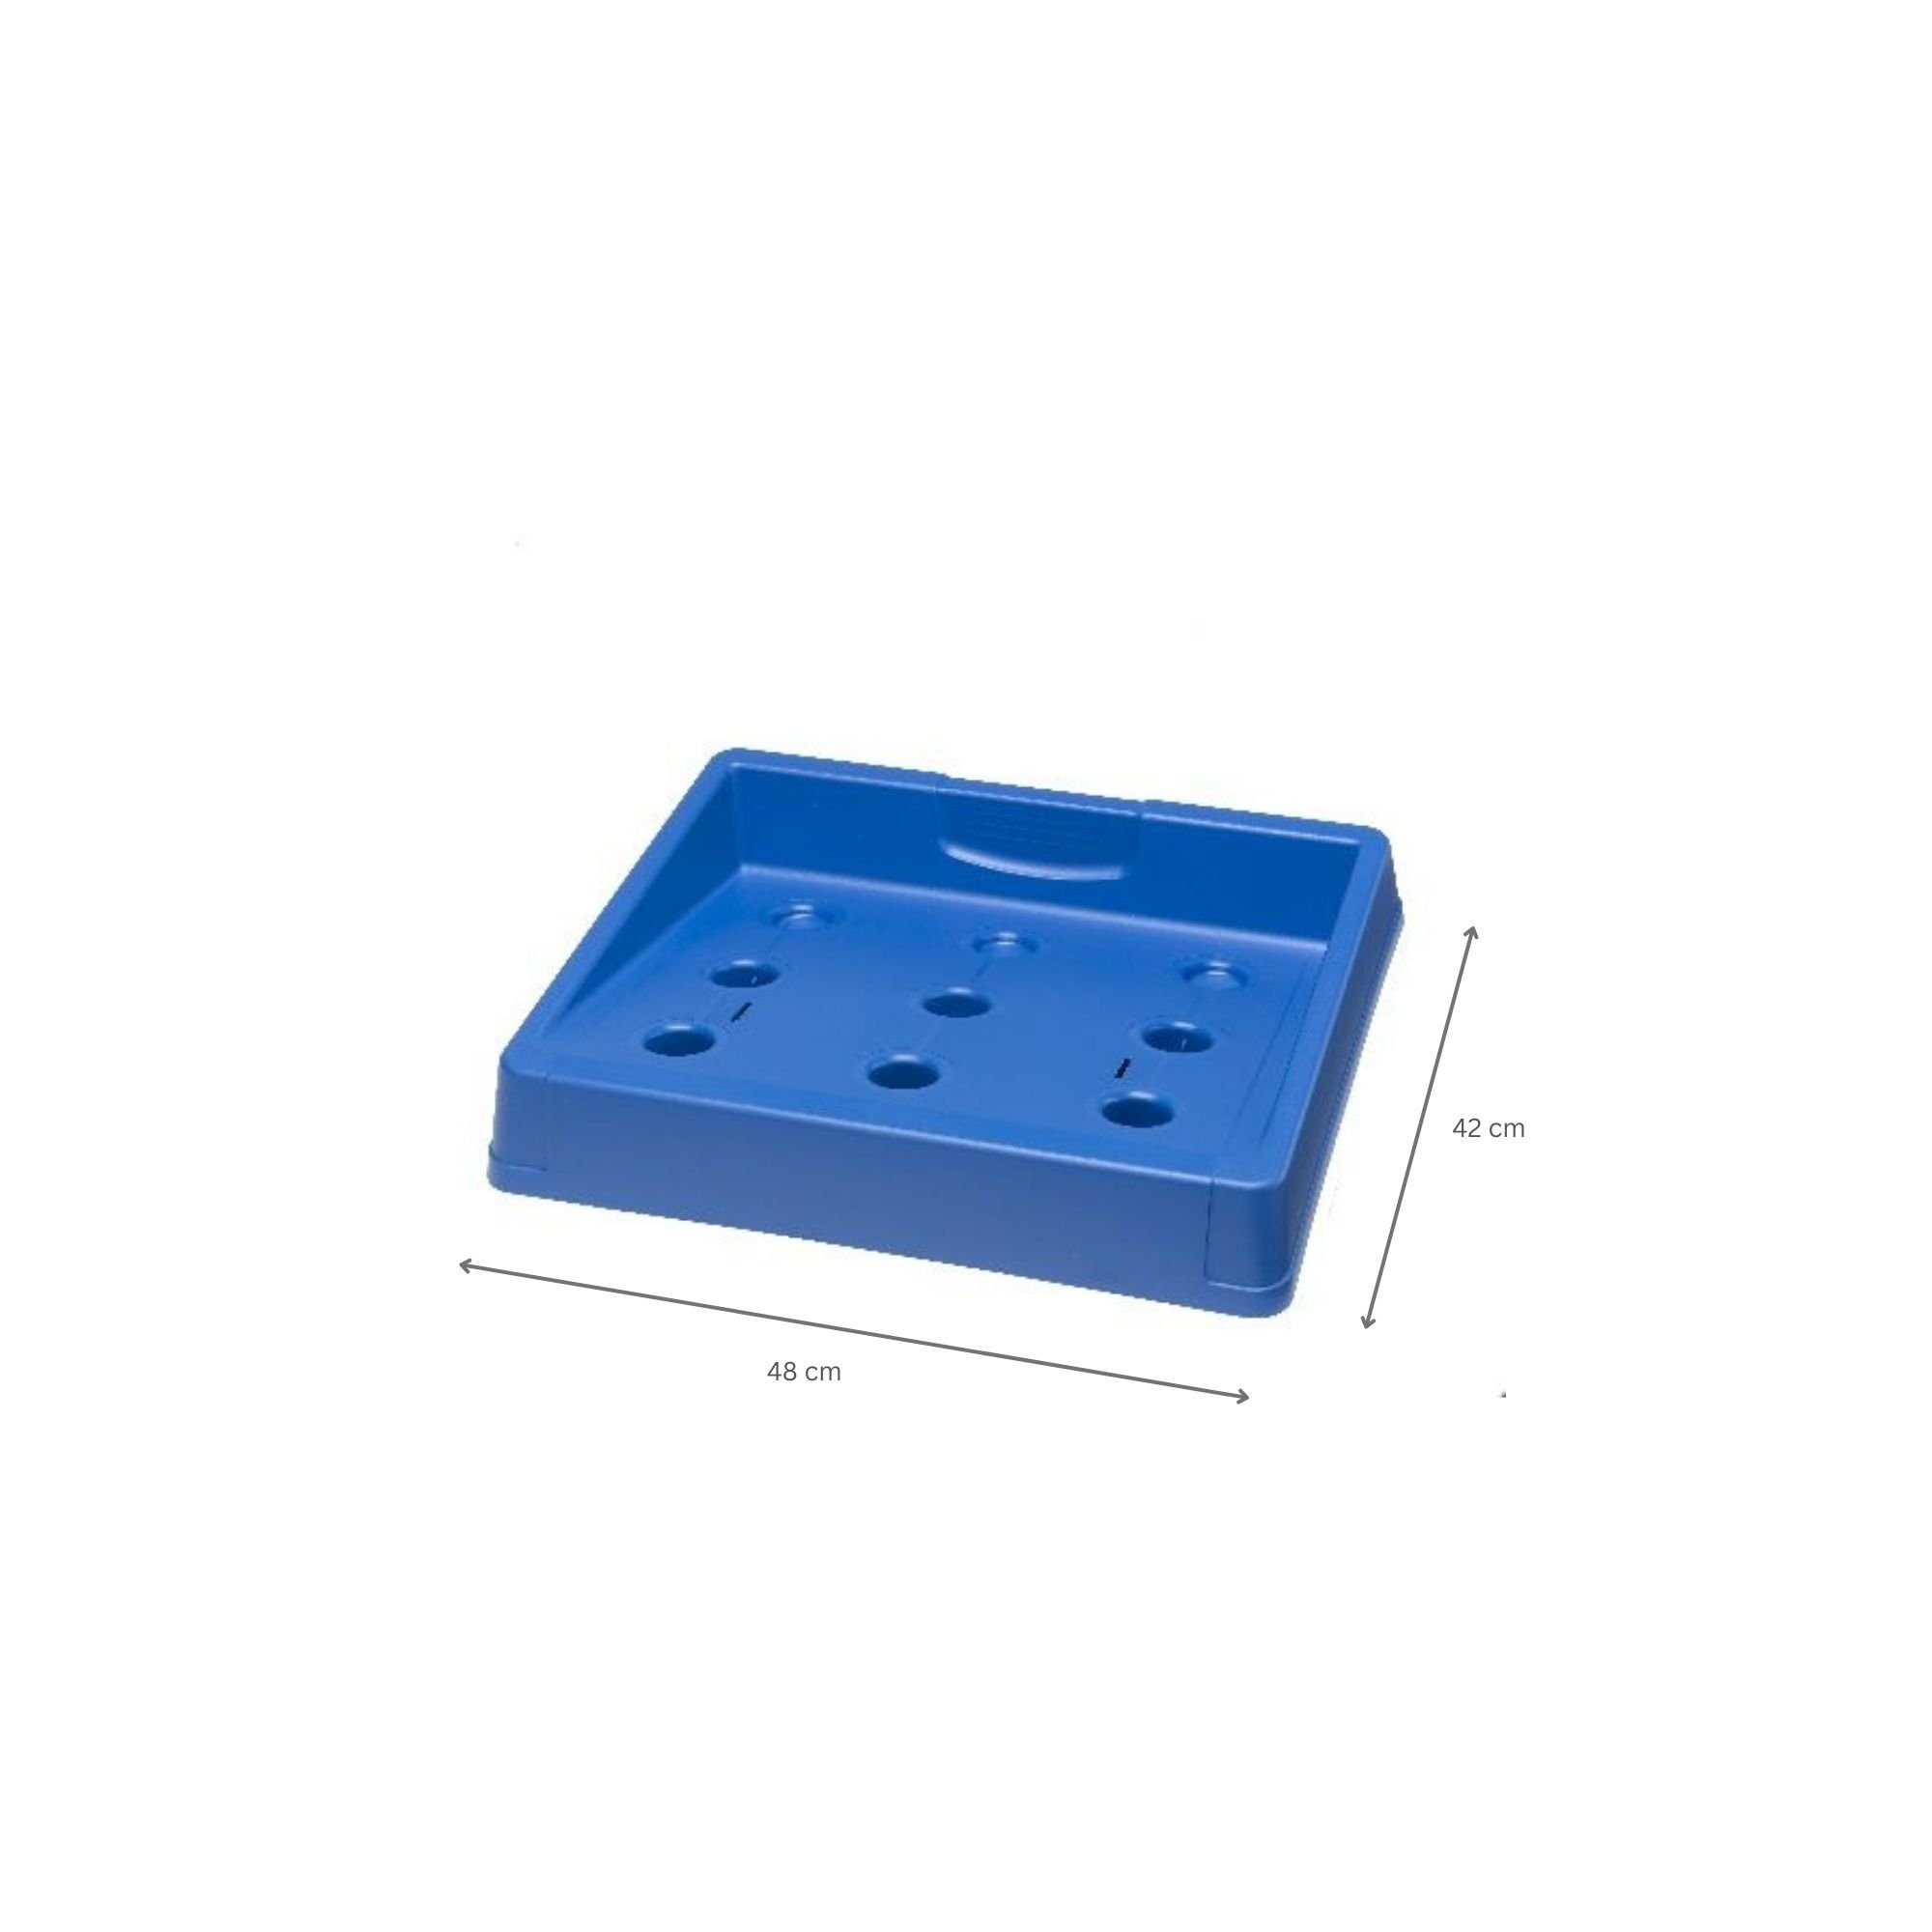 PROREGAL® Standregal Getränkekistenständer Plattensee, HxBxT Blau Verschiedene Farben 8x48x42cm